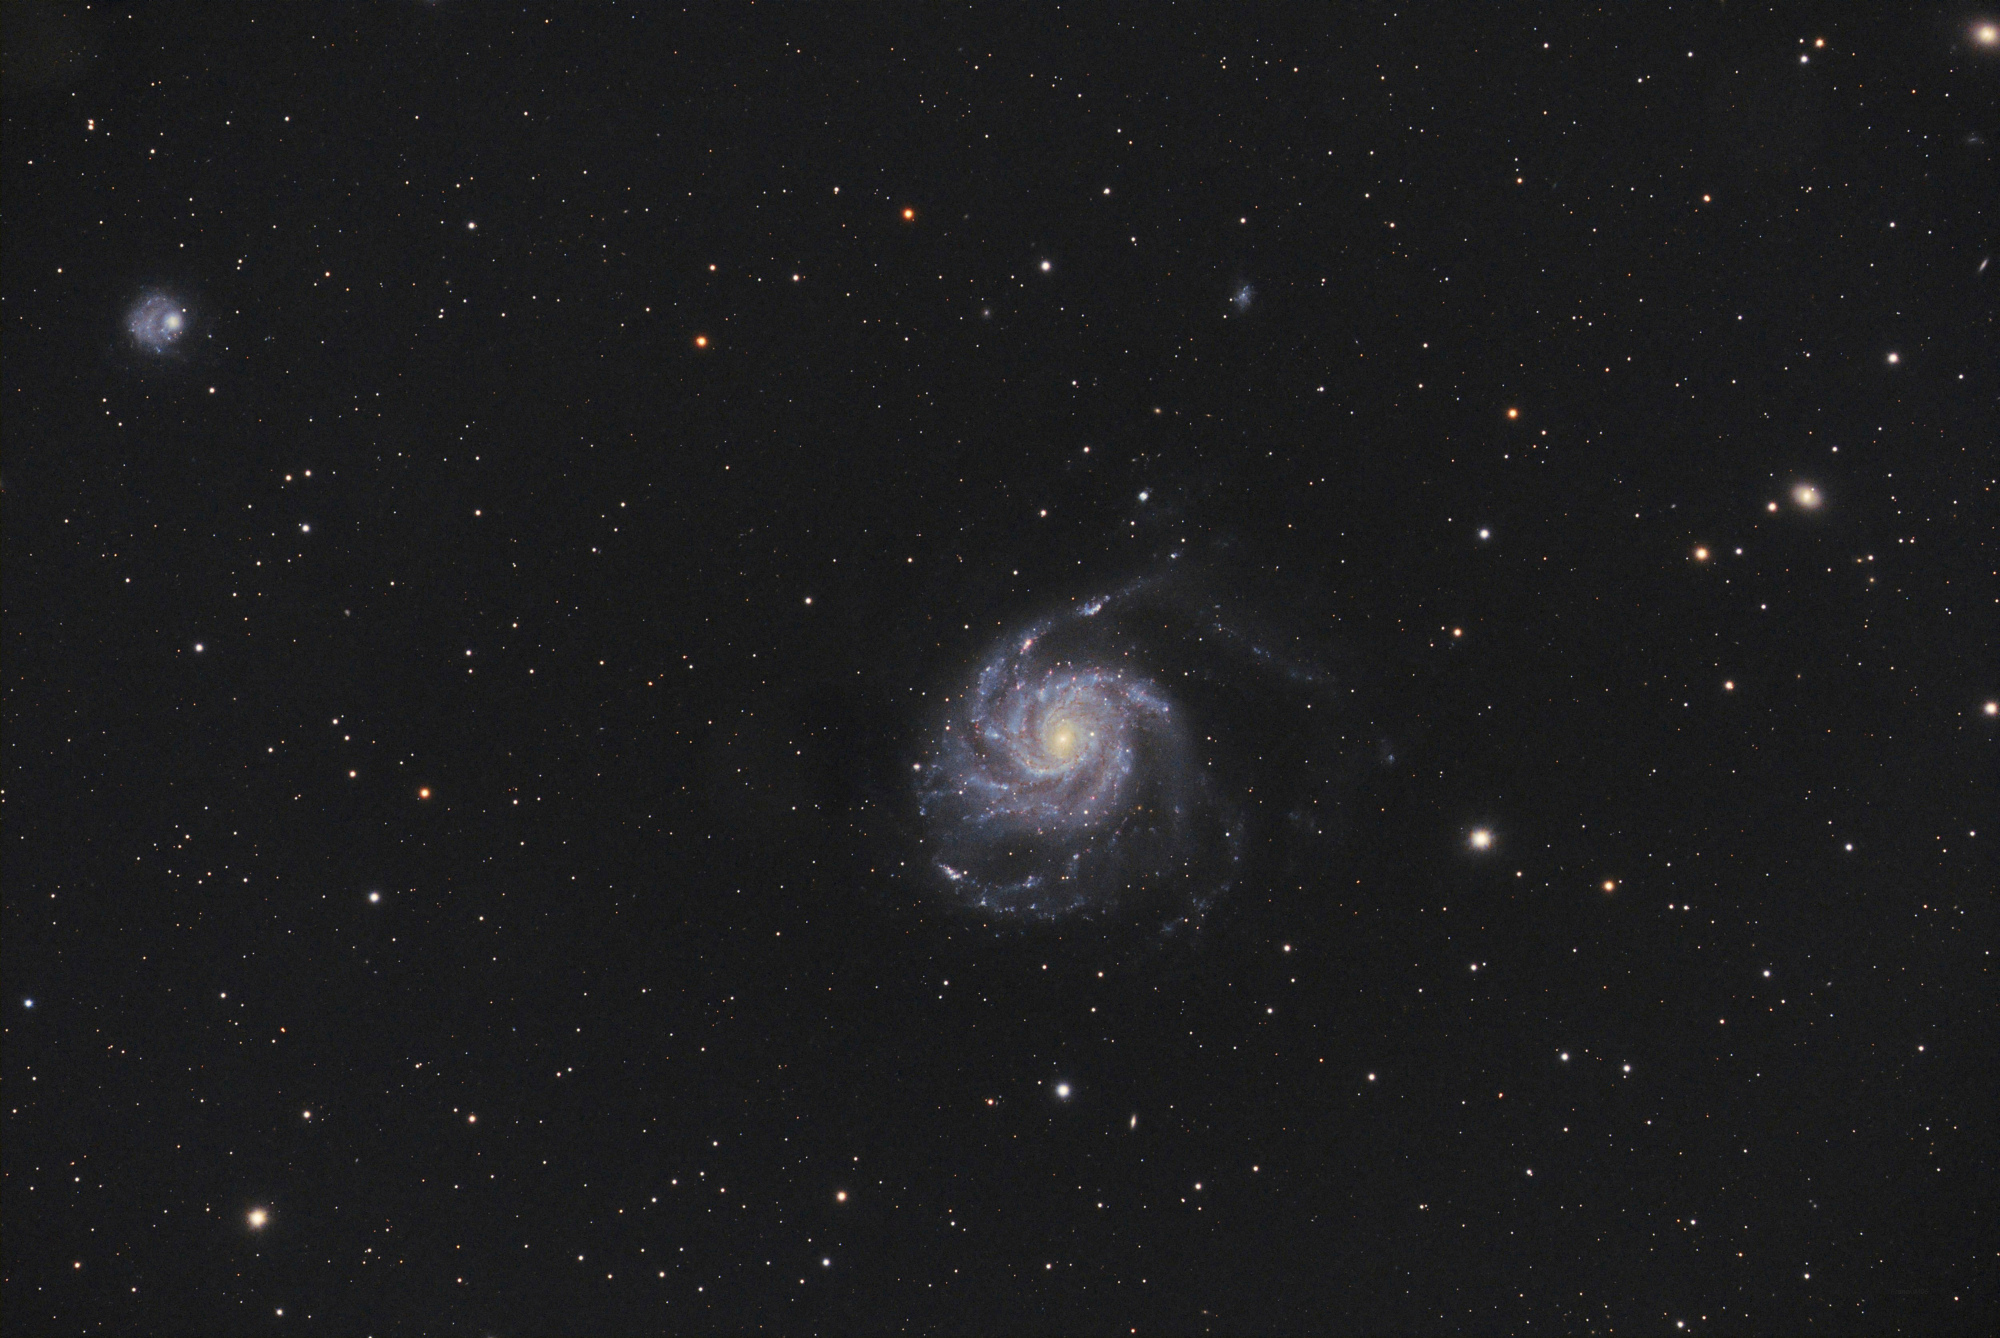 M101_SIRIL-1-cs5-2-FINAL-17.jpg